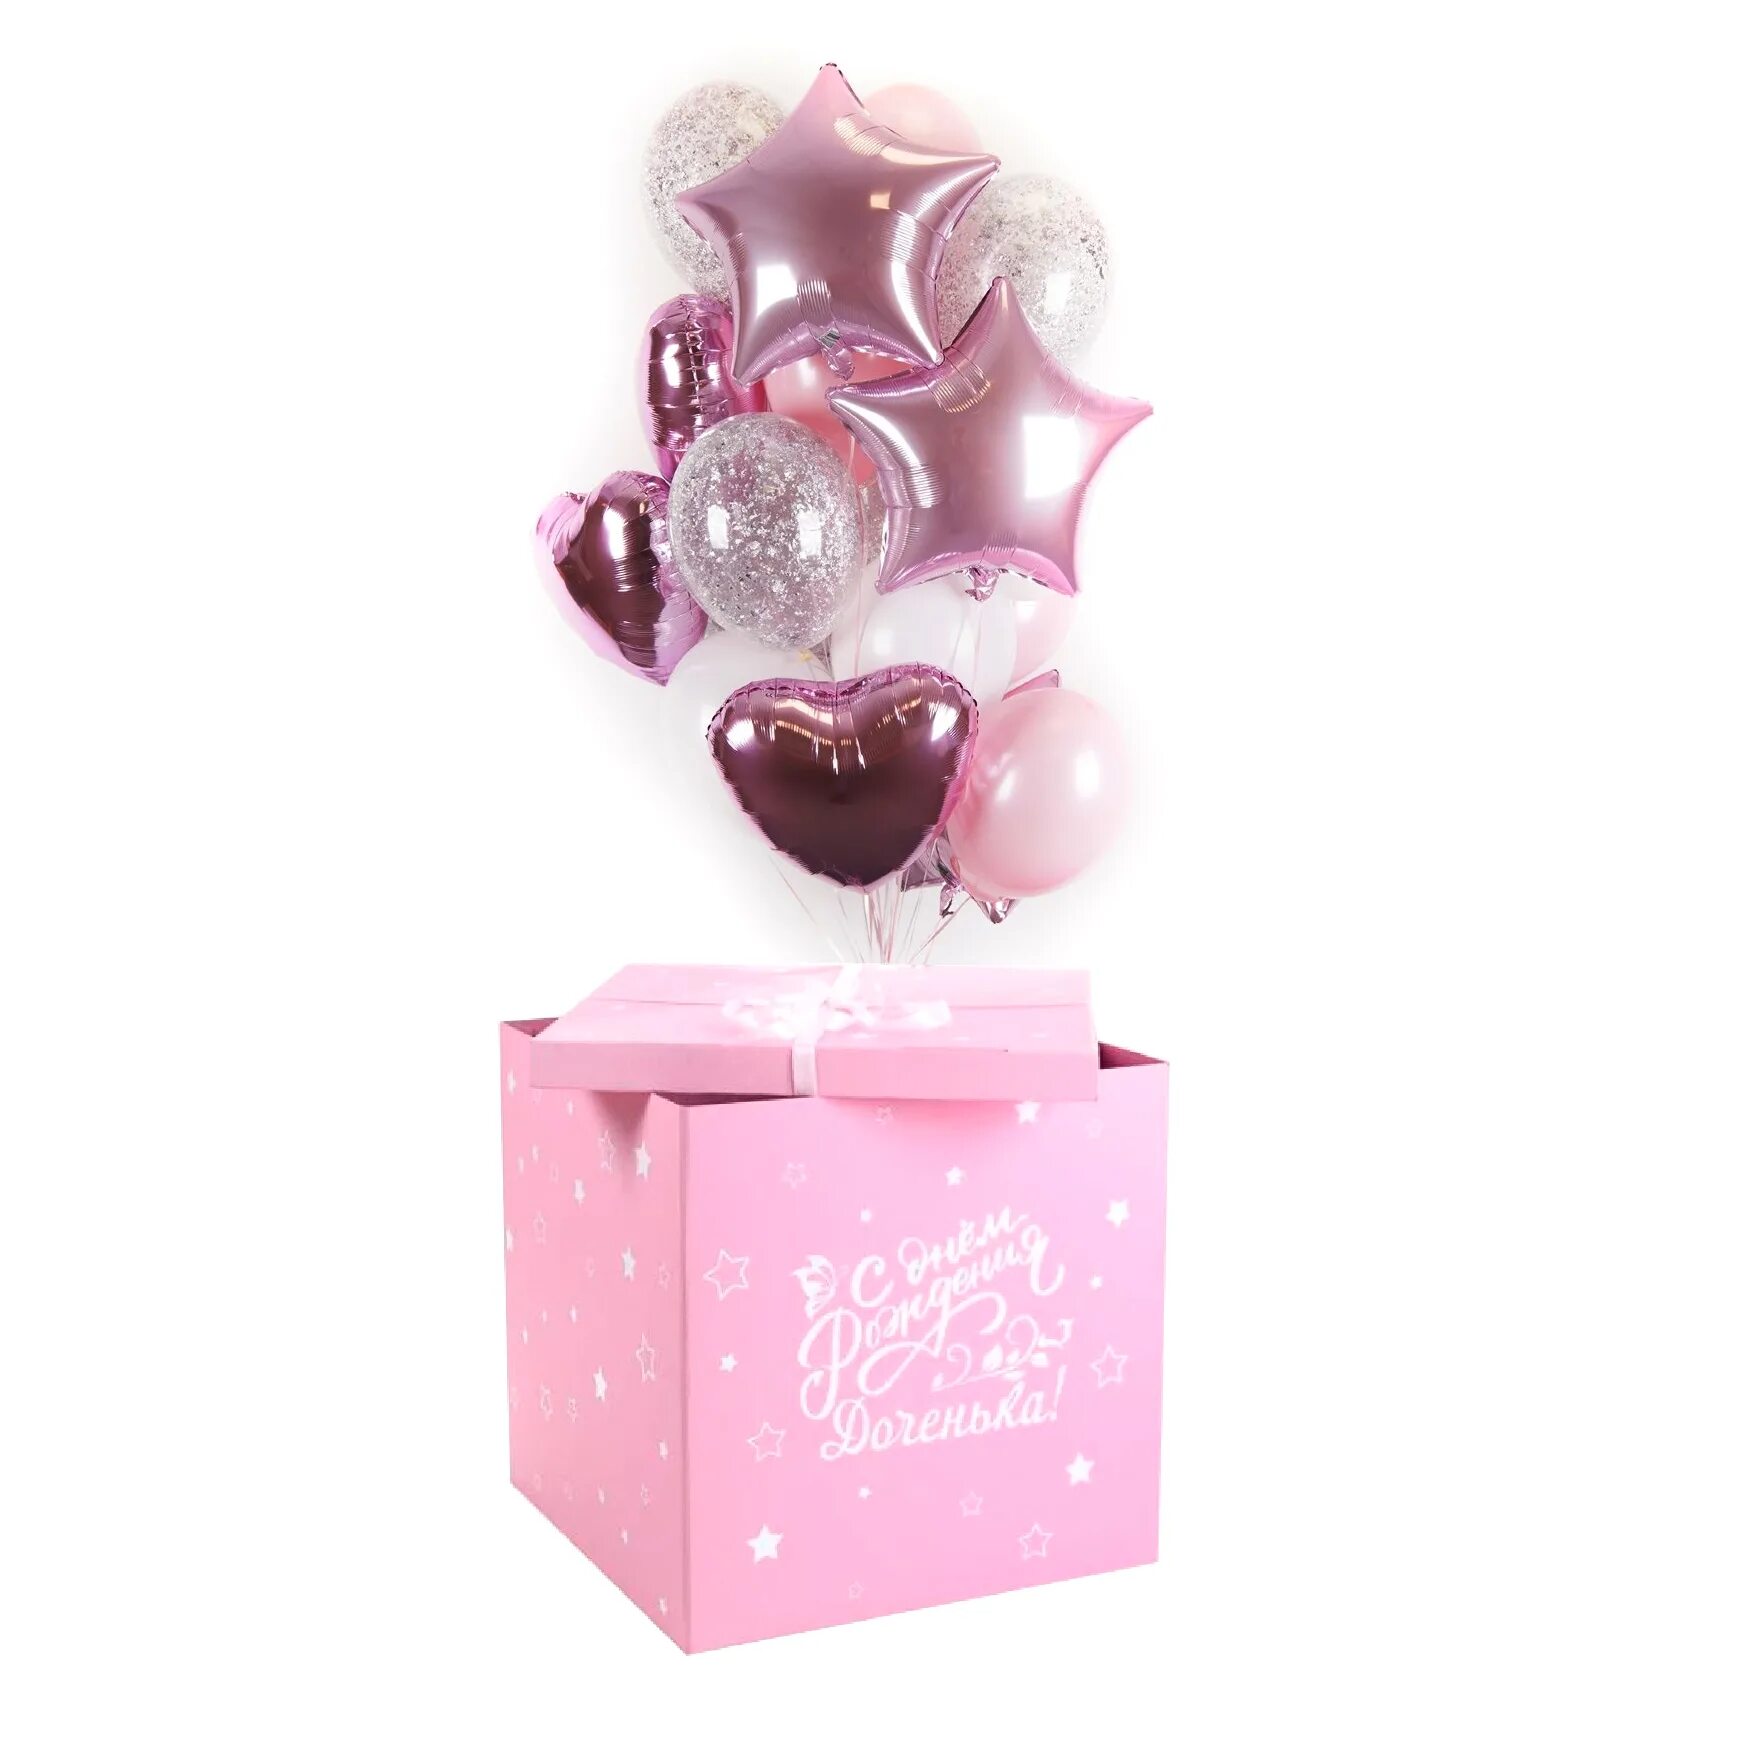 Воздушные шарики в коробке. Коробка с шарами. Коробка с шарами для девочки. Коробка сюрприз с шарами для девочки. Розовая коробка сюрприз с шарами.